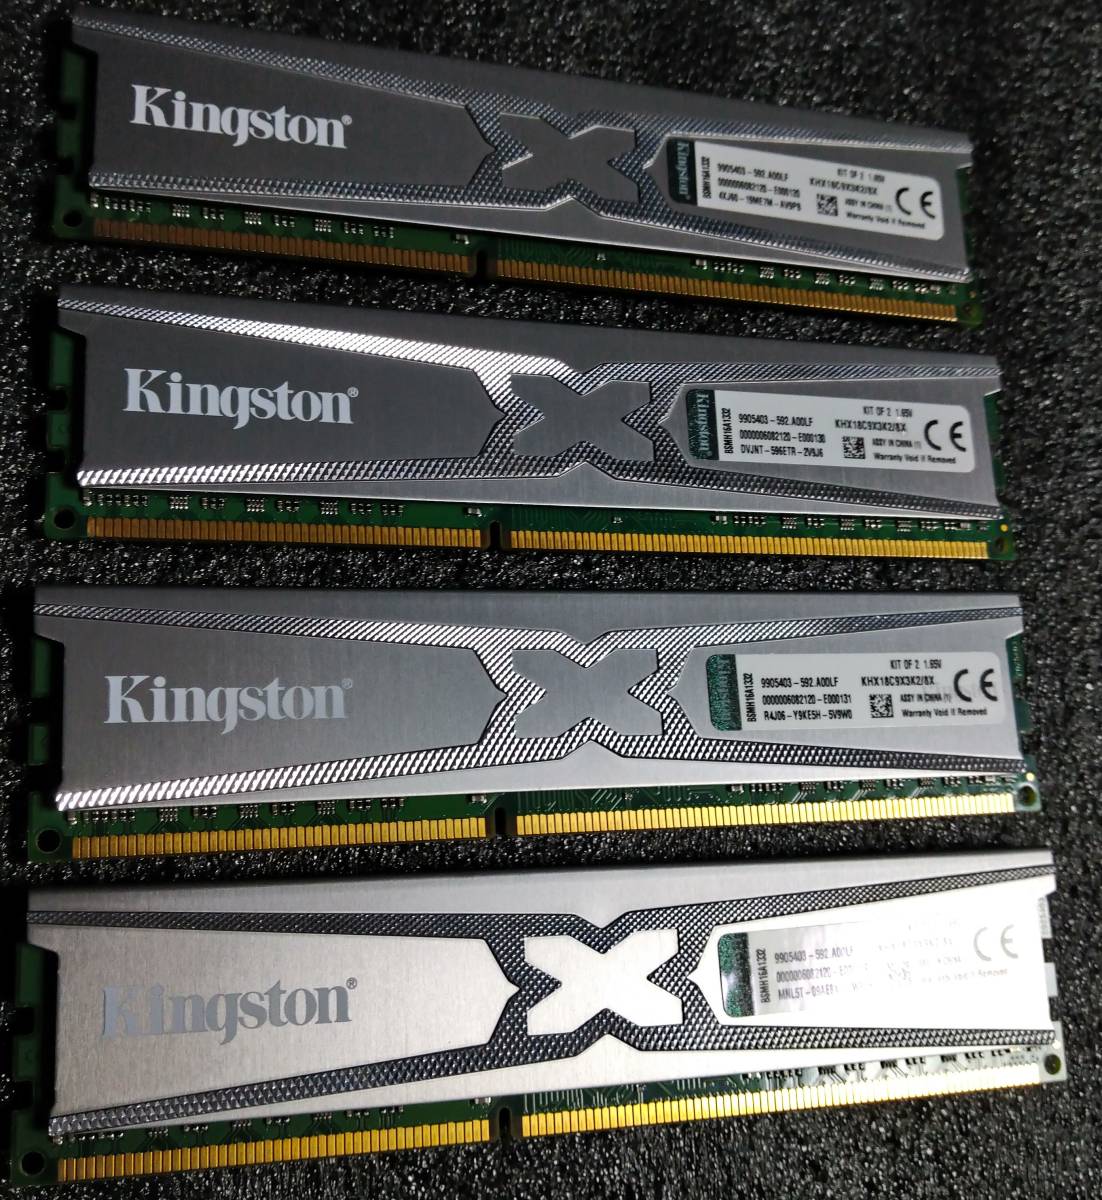 【中古】DDR3メモリ 16GB(4GB4枚組) Kingston KHX18C9X3K2/8X [DDR3-1866 PC3-14900]